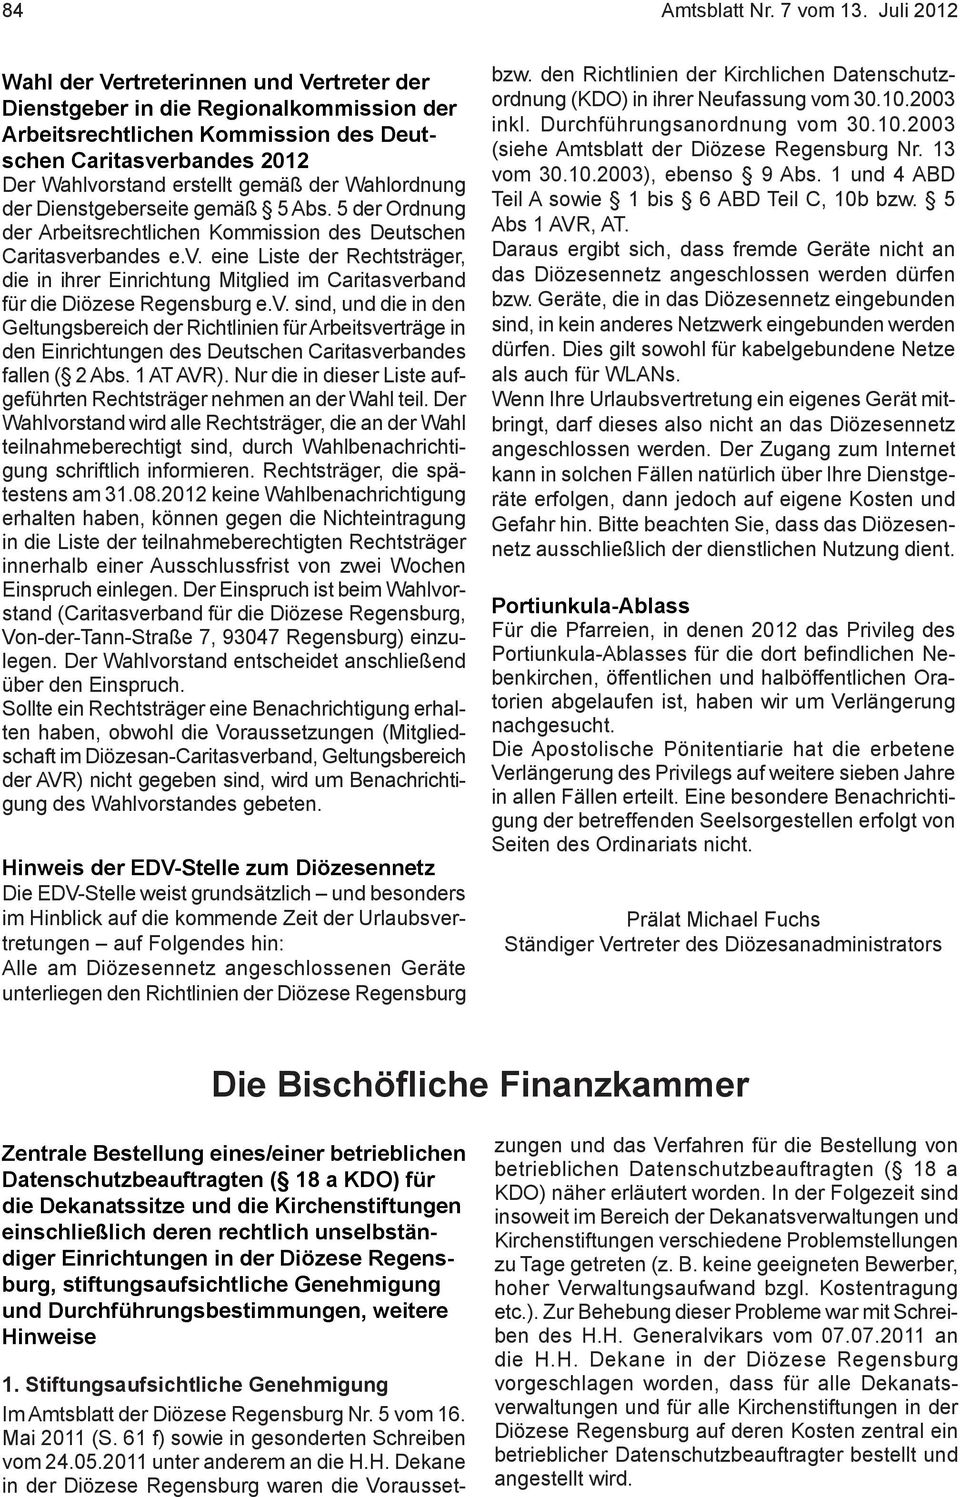 Wahlordnung der Dienstgeberseite gemäß 5 Abs. 5 der Ordnung der Arbeitsrechtlichen Kommission des Deutschen Caritasve